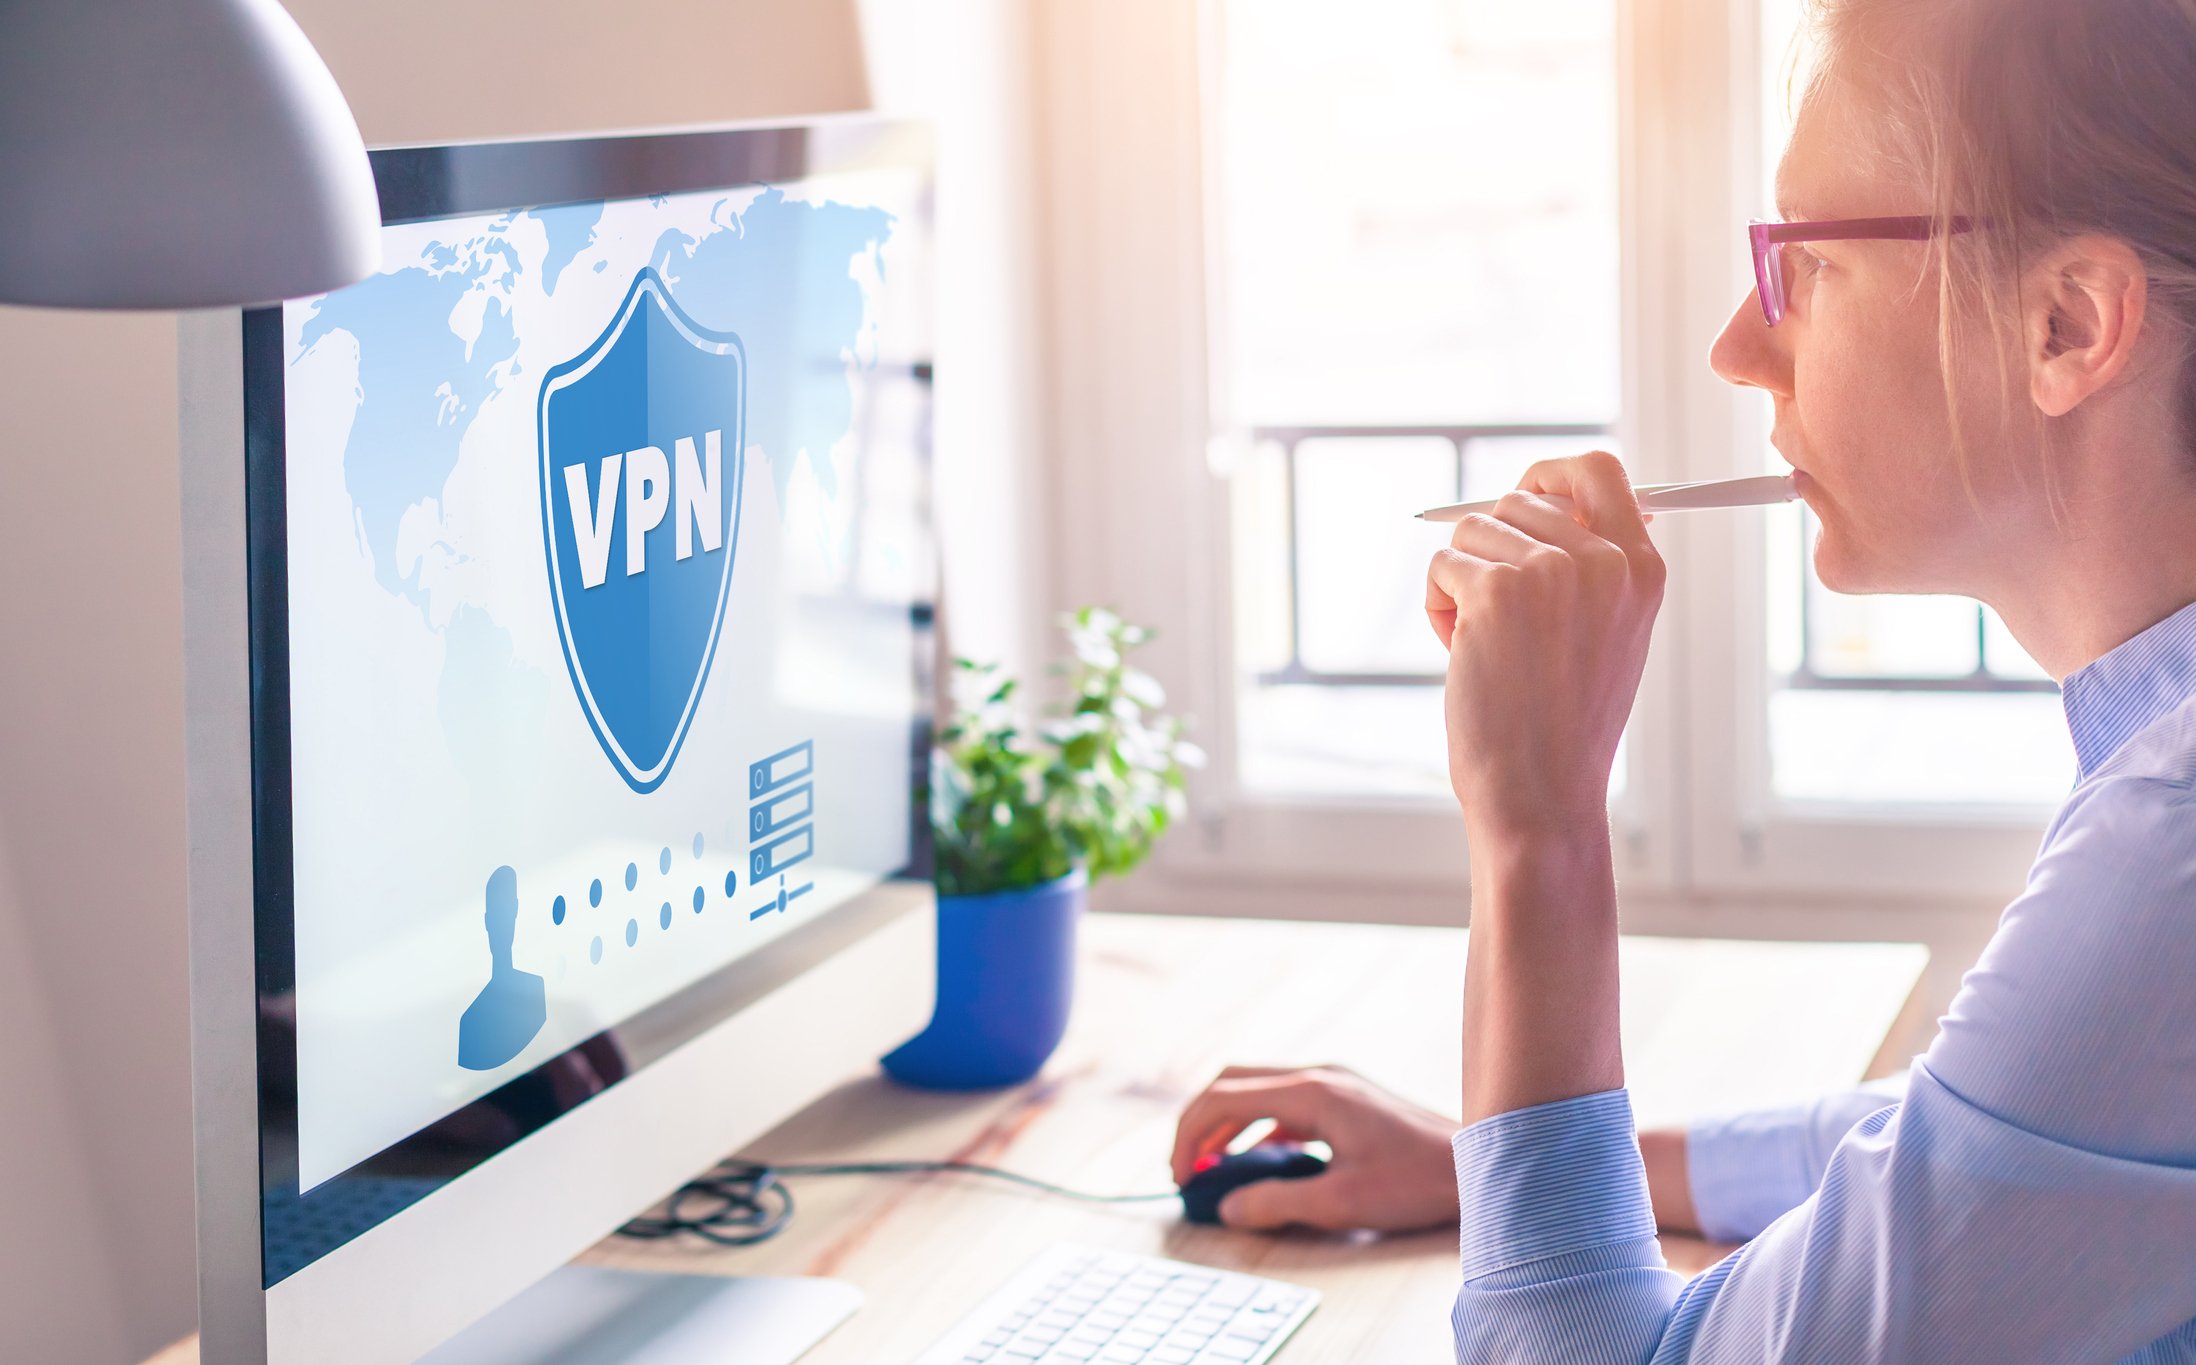 VPN grátis